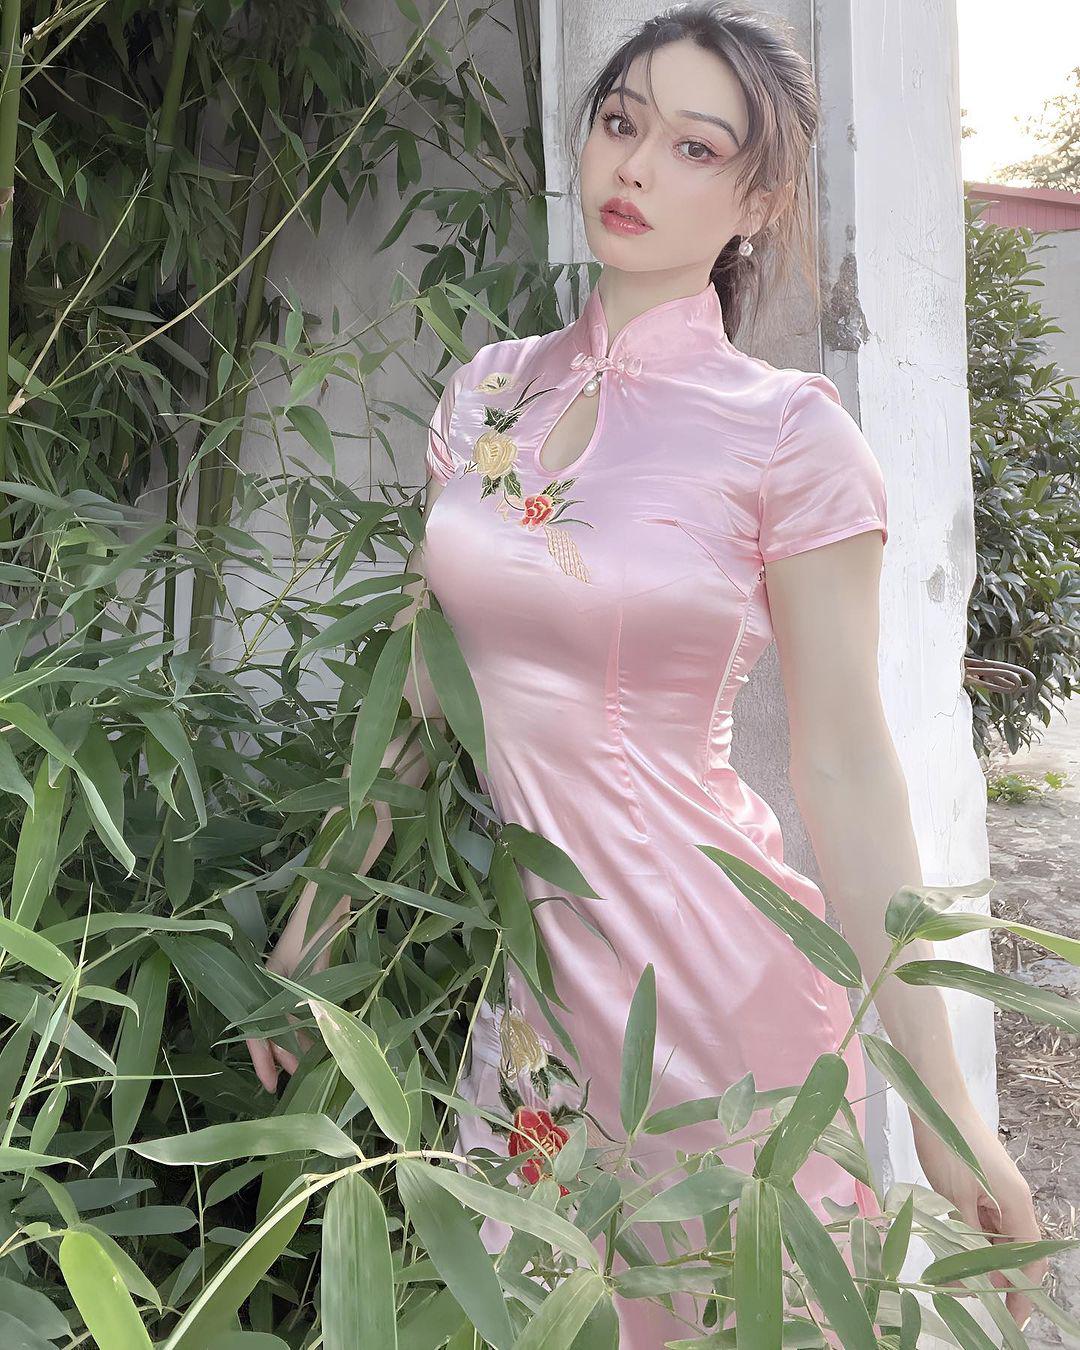 "Thiên thần cơ bắp hot nhất Trung Quốc" diện váy bó sát tôn đường cong quyến rũ - 8